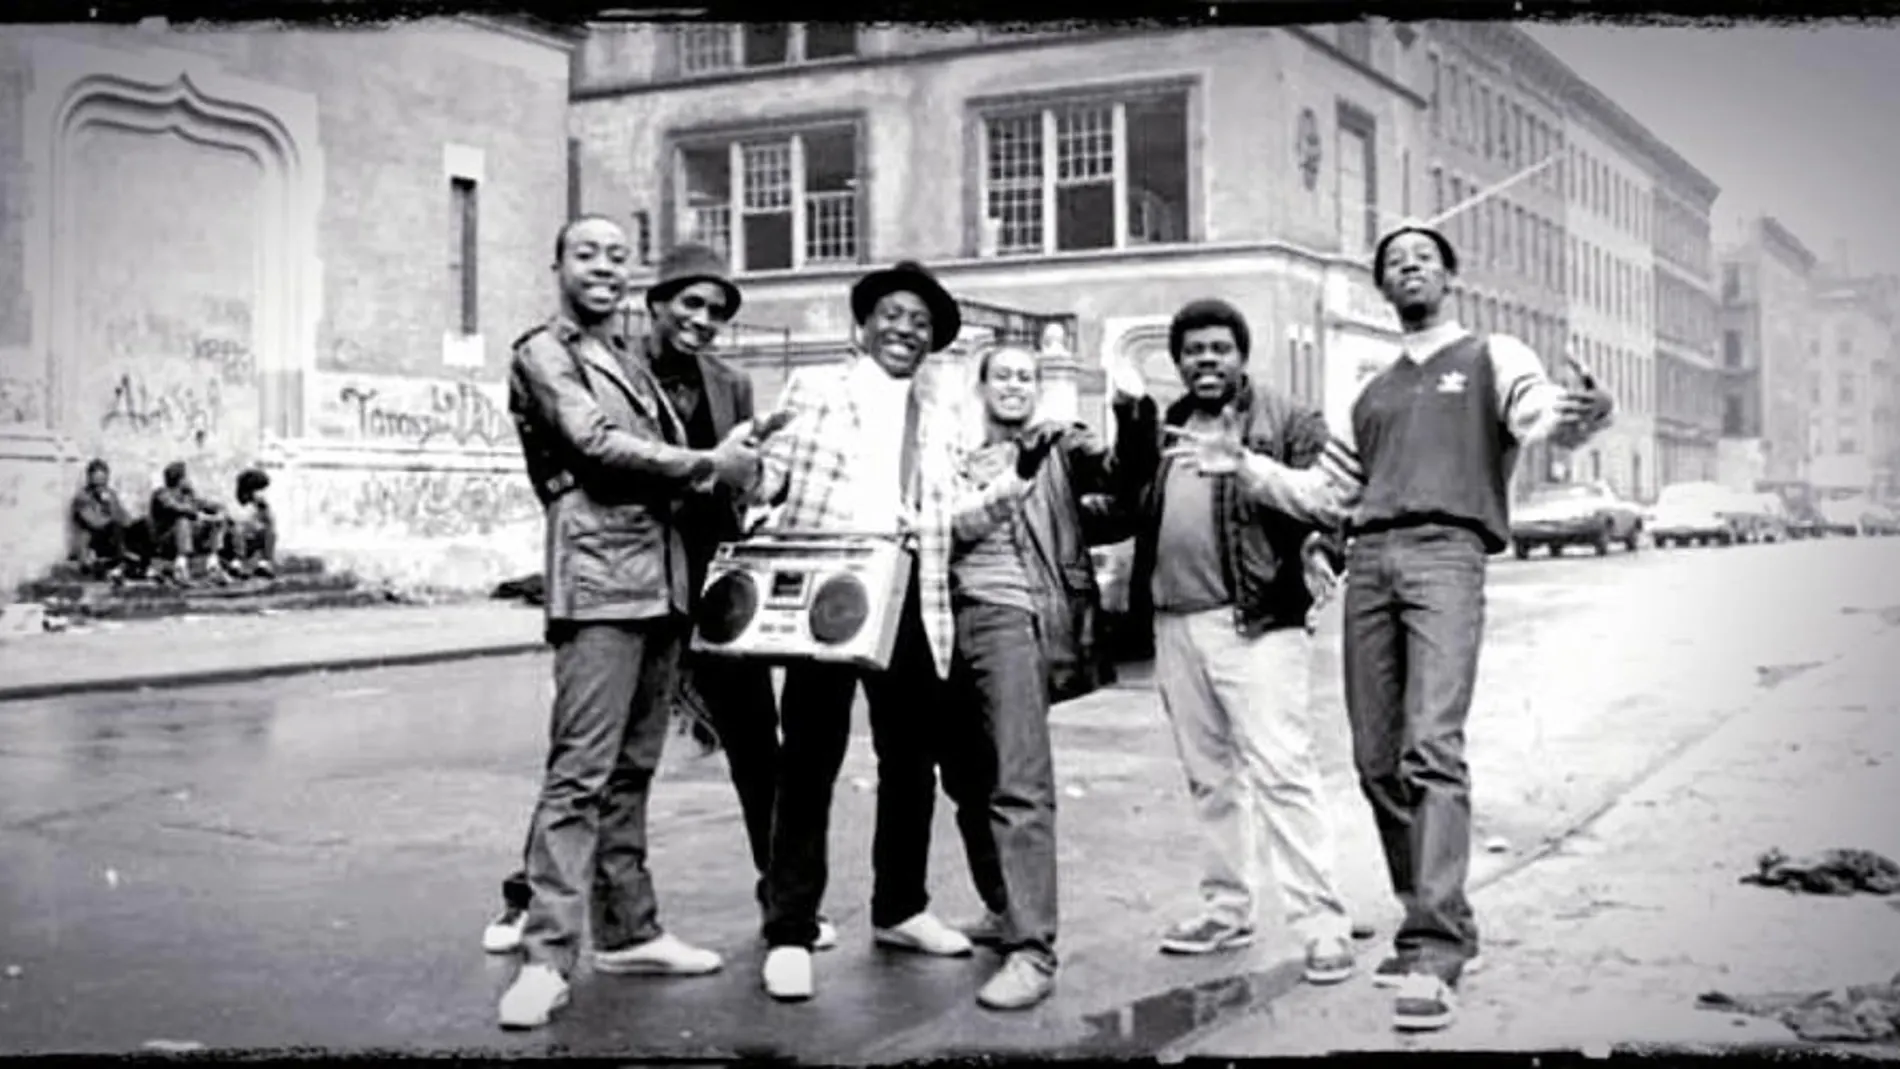 Dj Kay Slay (a la derecha) fue calificado «el ministro del insulto» por el «New York Times» antes de terminar en la cárcel. En la imagen, junto a su grupo (o «crew») frente a una escuela abandonada en Harlem, 1982